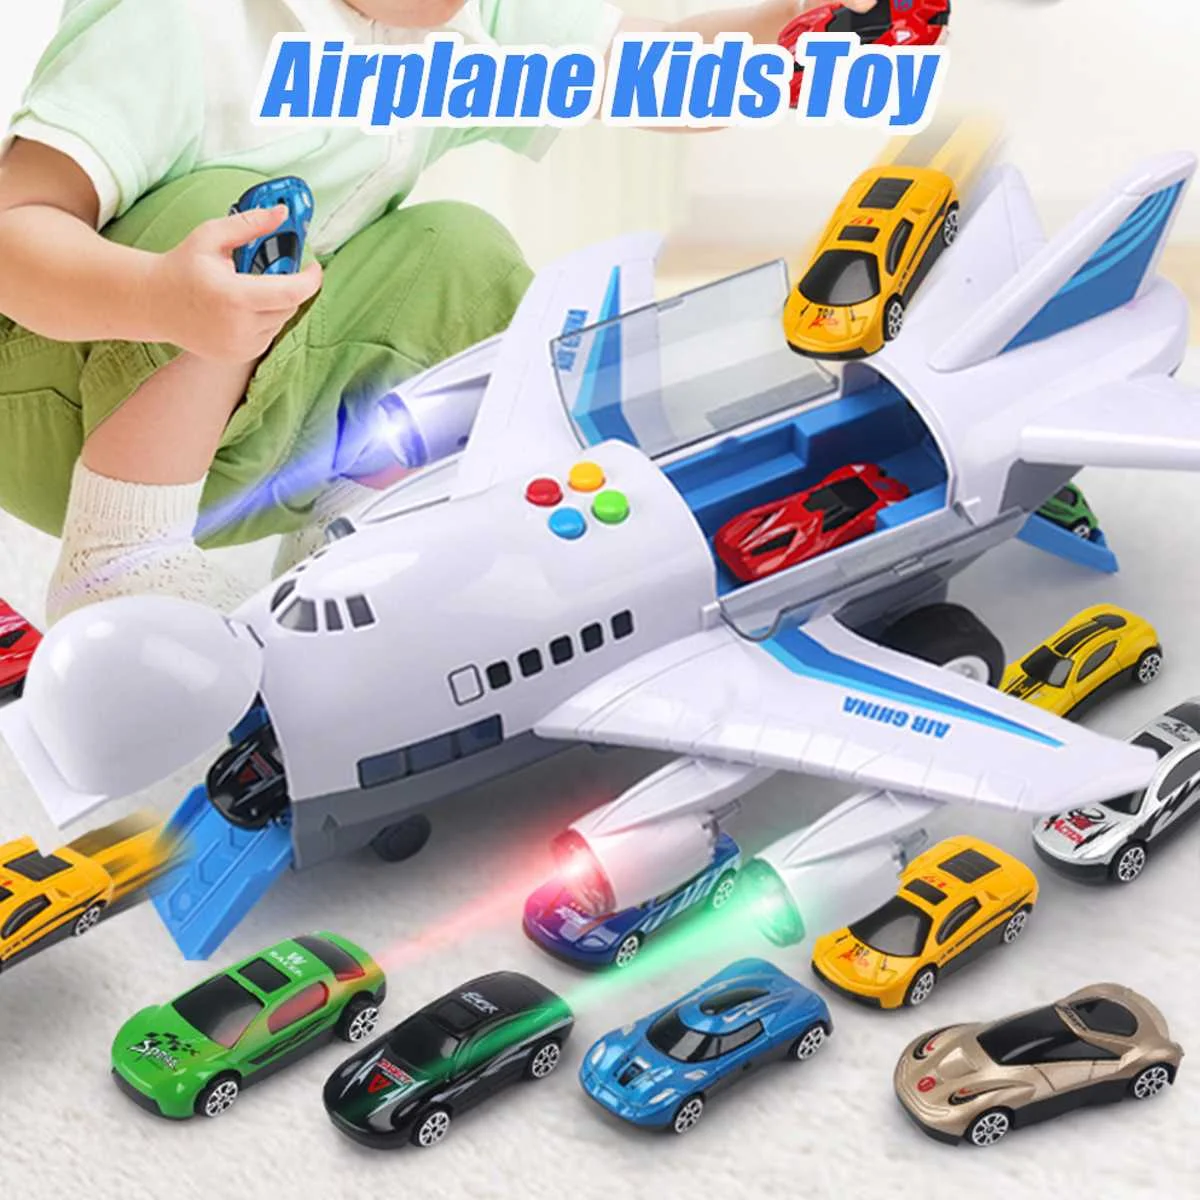 

Самолет игрушечный Have12 сборка автомобилей, самолёт летательного аппарата, большой размер, музыка, освещение, игрушки, флэш-звук, автопилот, ...